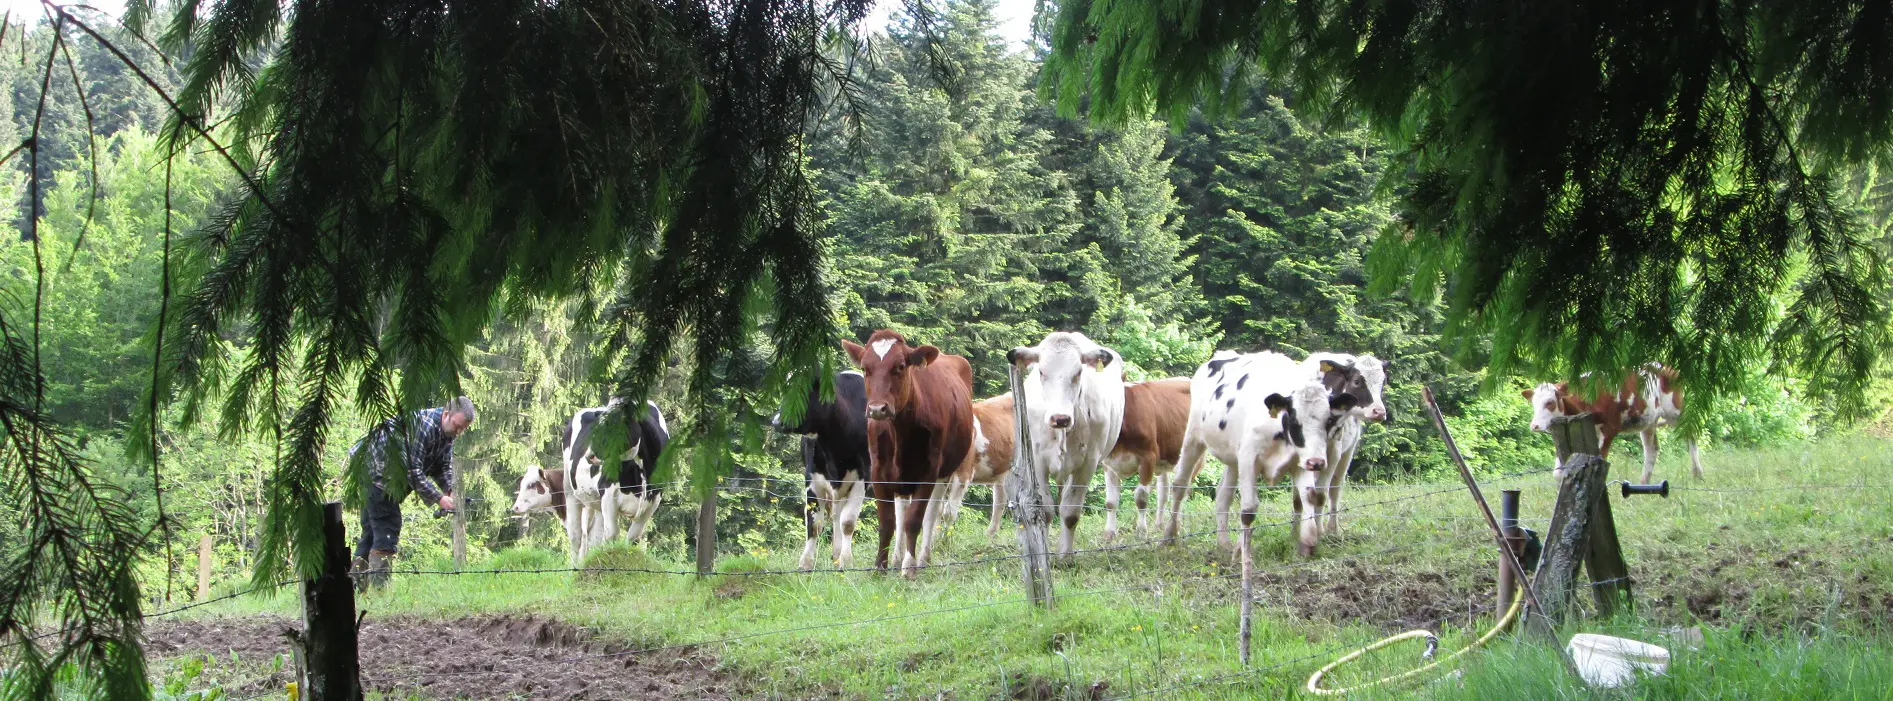 Kühe auf der Weide am Rand vom Wald